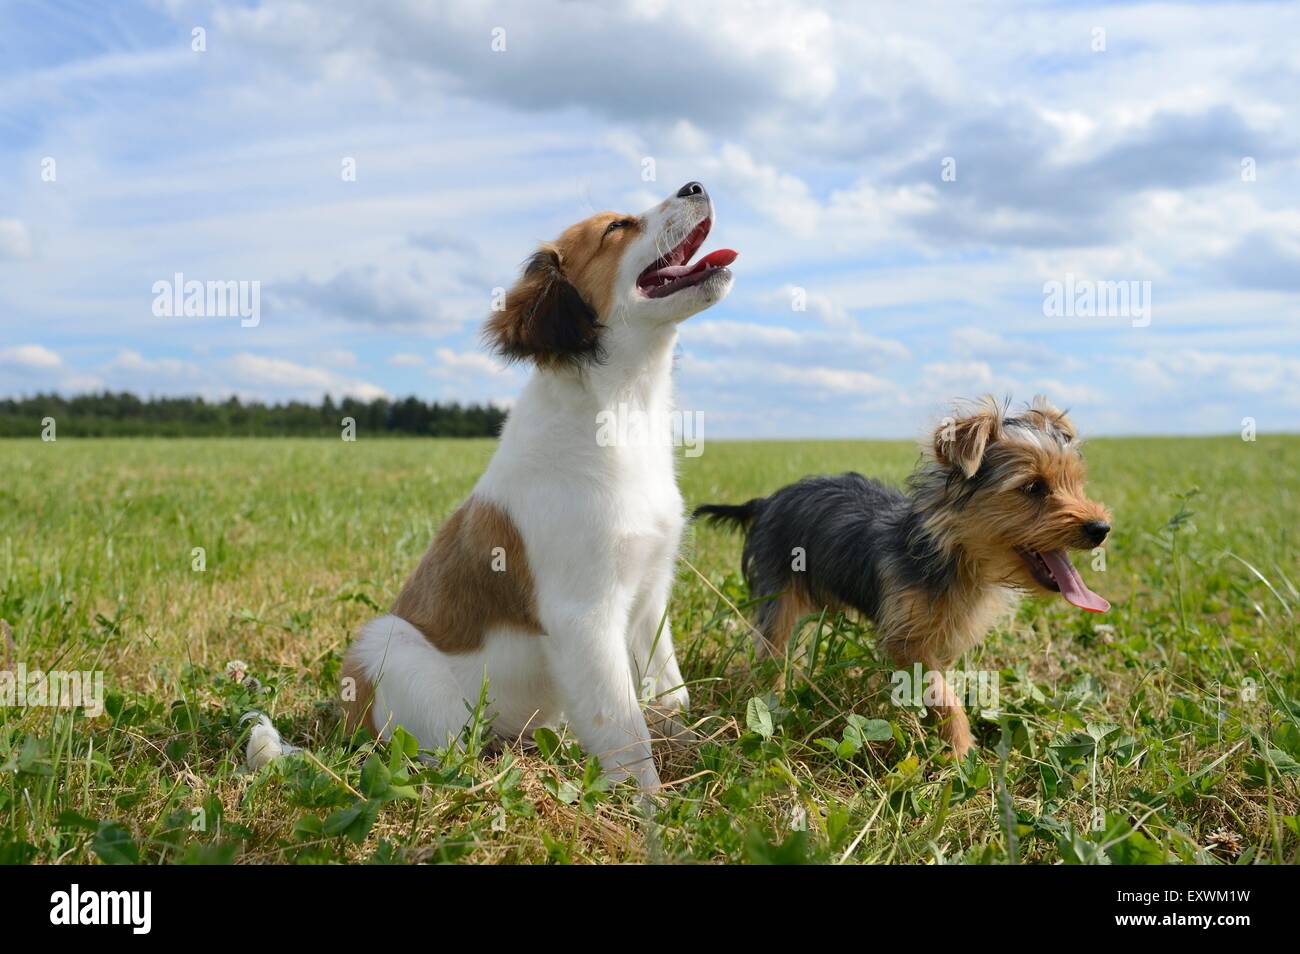 Yorkshire Terrier y Niederlande Kooikerhondje, el Alto Palatinado, Alemania, Europa Foto de stock